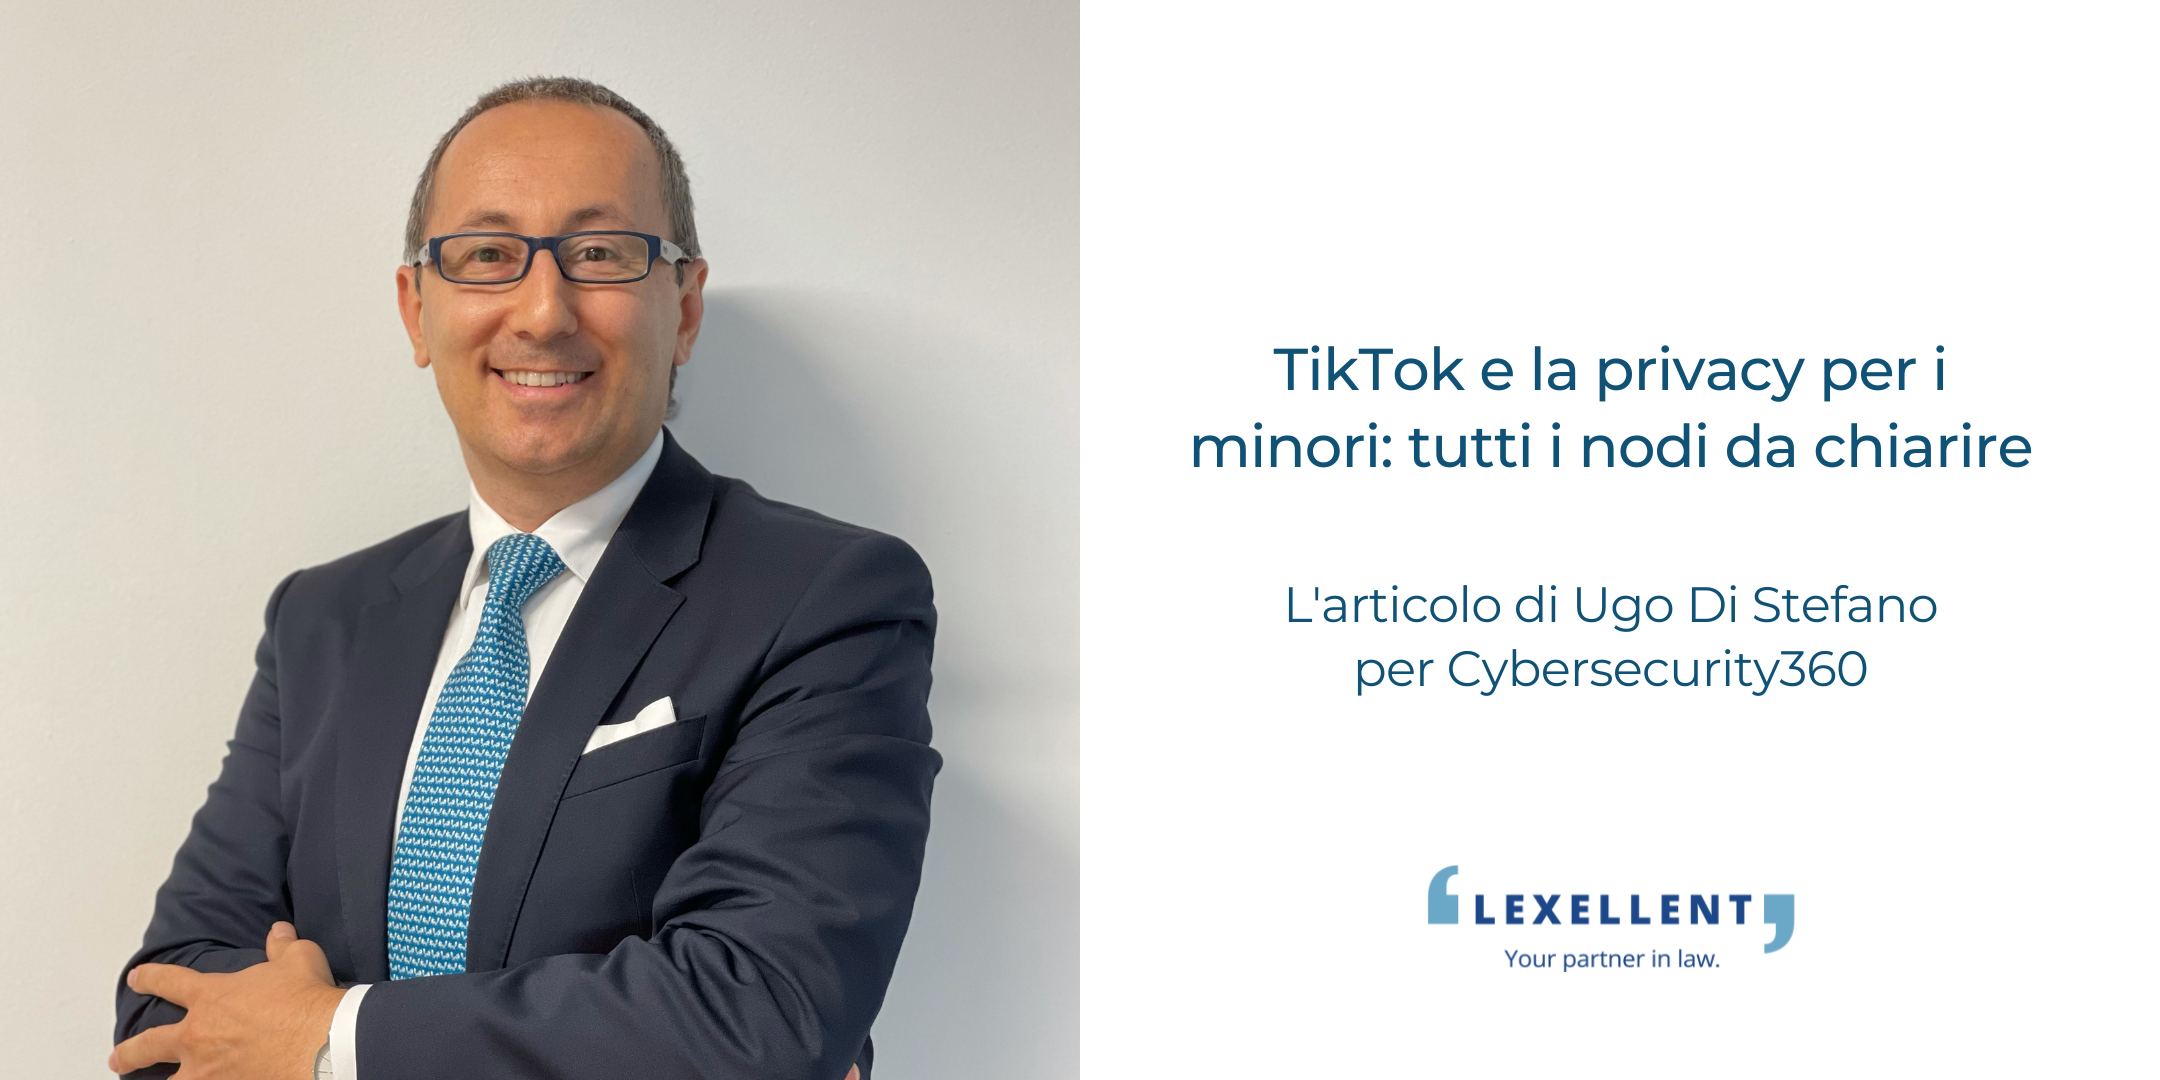 “TikTok e la privacy per i minori: tutti i nodi da chiarire”, l’articolo di Ugo Di Stefano per Cybersecurity360